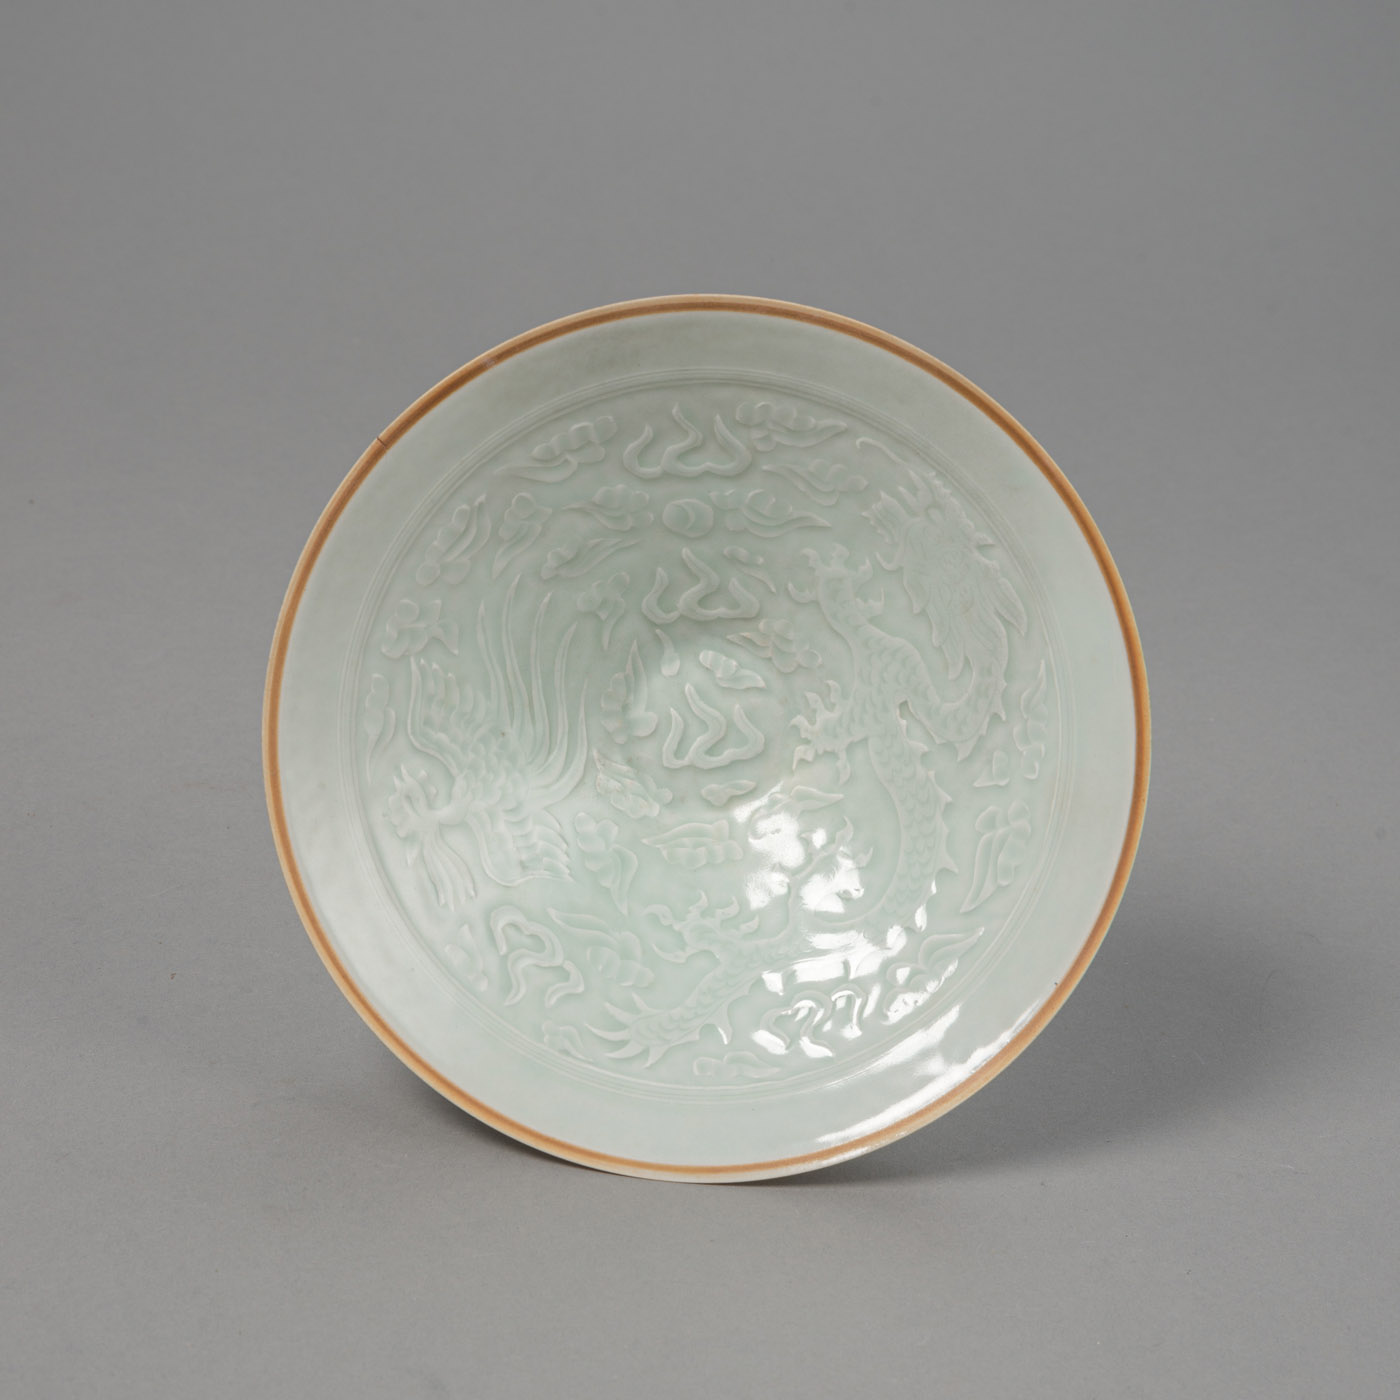 <b>Sehr dünnwändige konische Porzellanschale mit 'qingbai'-Glasur mit Drachen- und Phönixdekor in Relief, Boden und Lippe unglasiert</b>